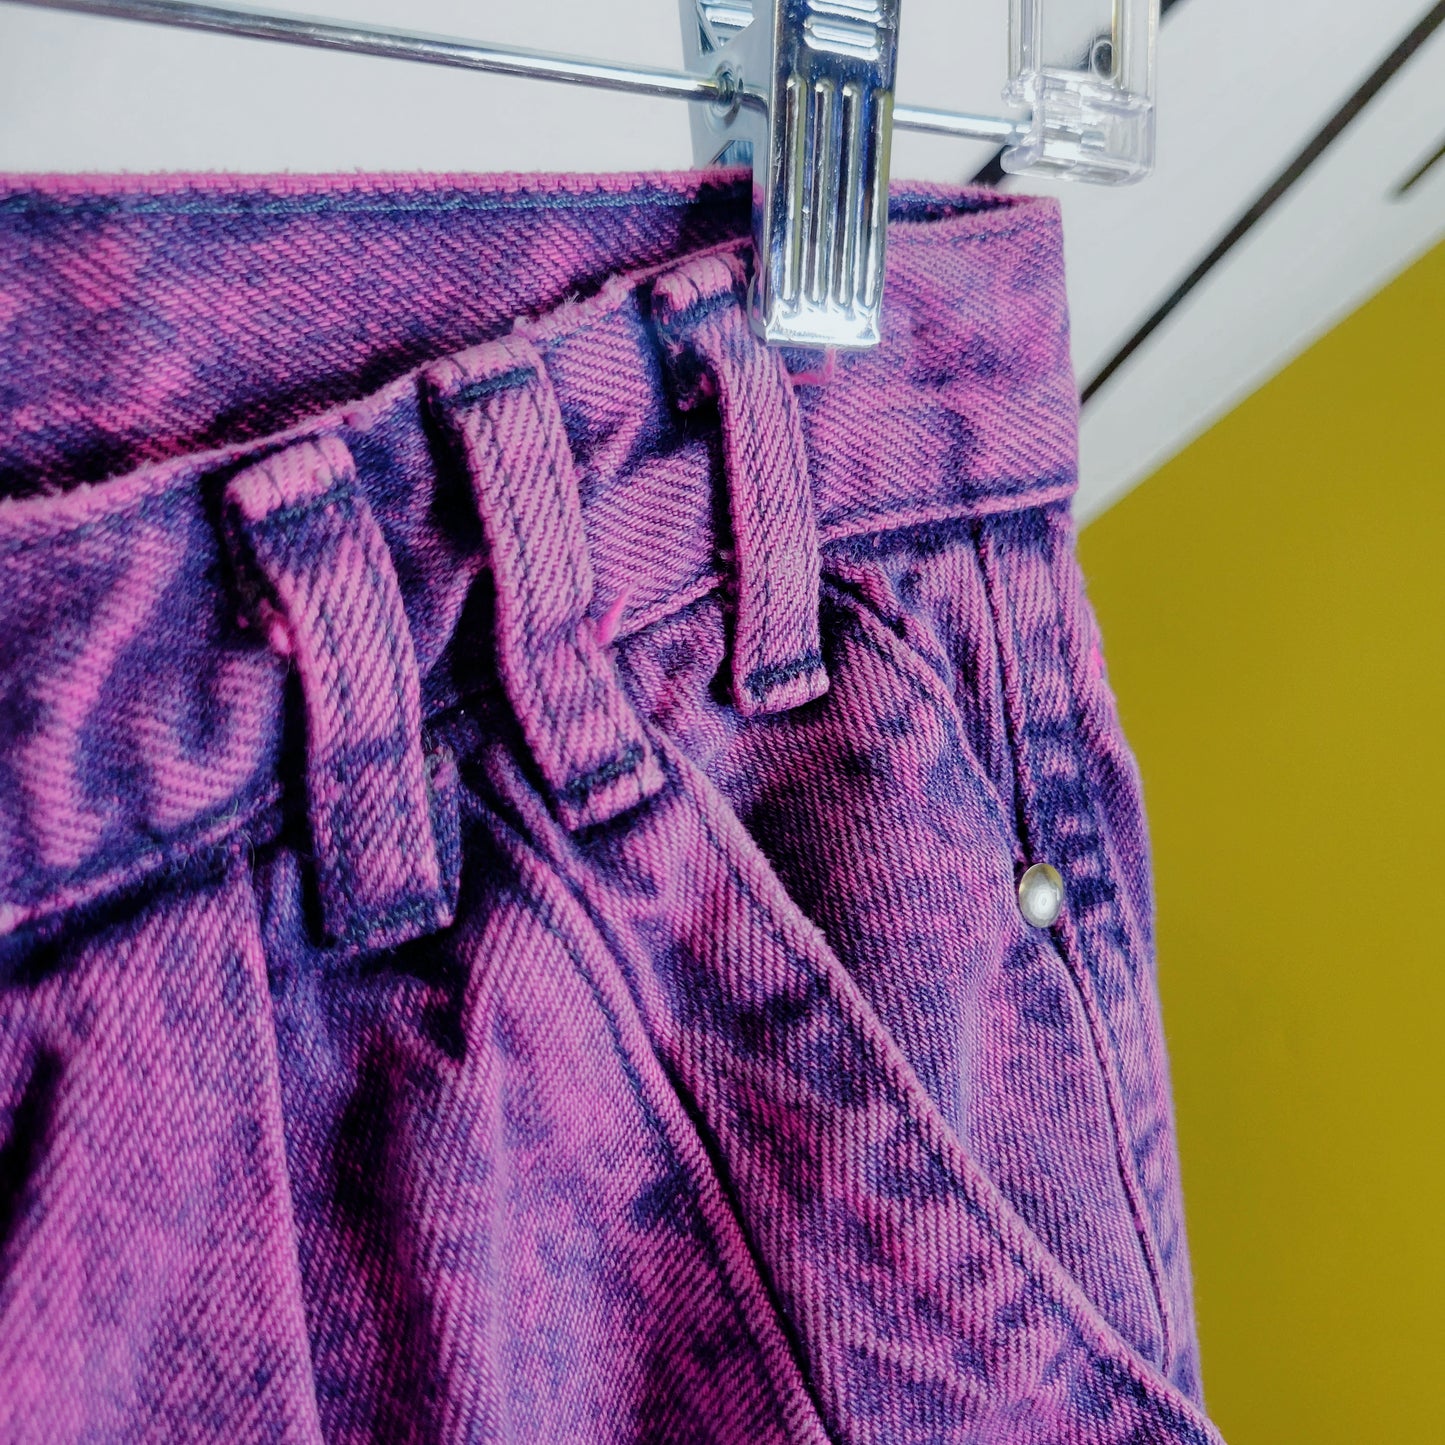 Roper Vintage 80s Pink /Purple Acid Wash Denim Jeans - size 9